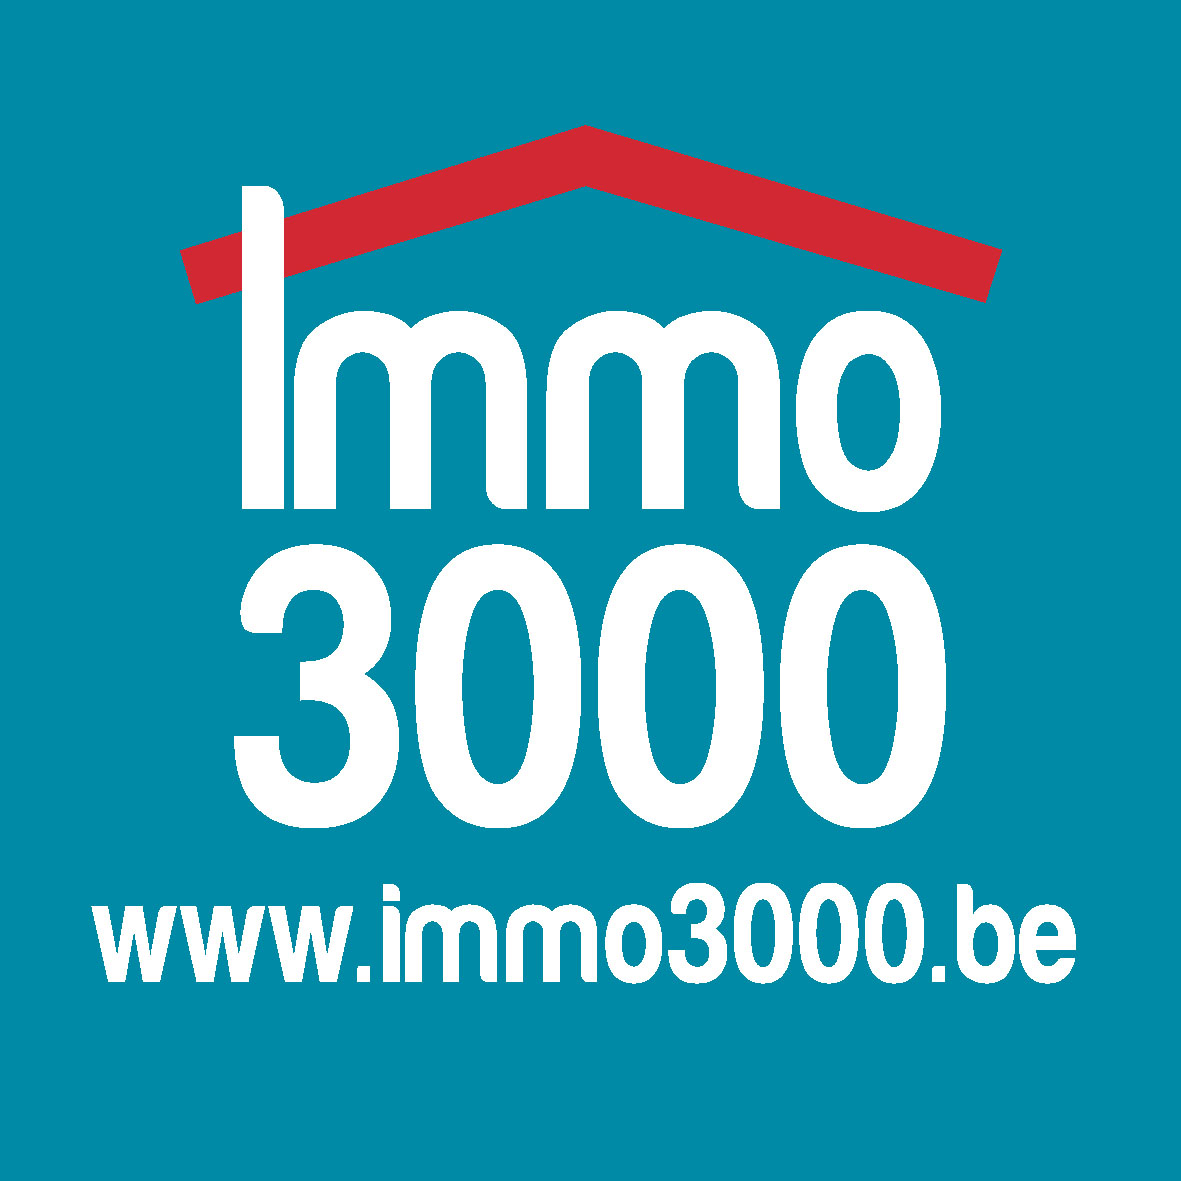 IMMO3000